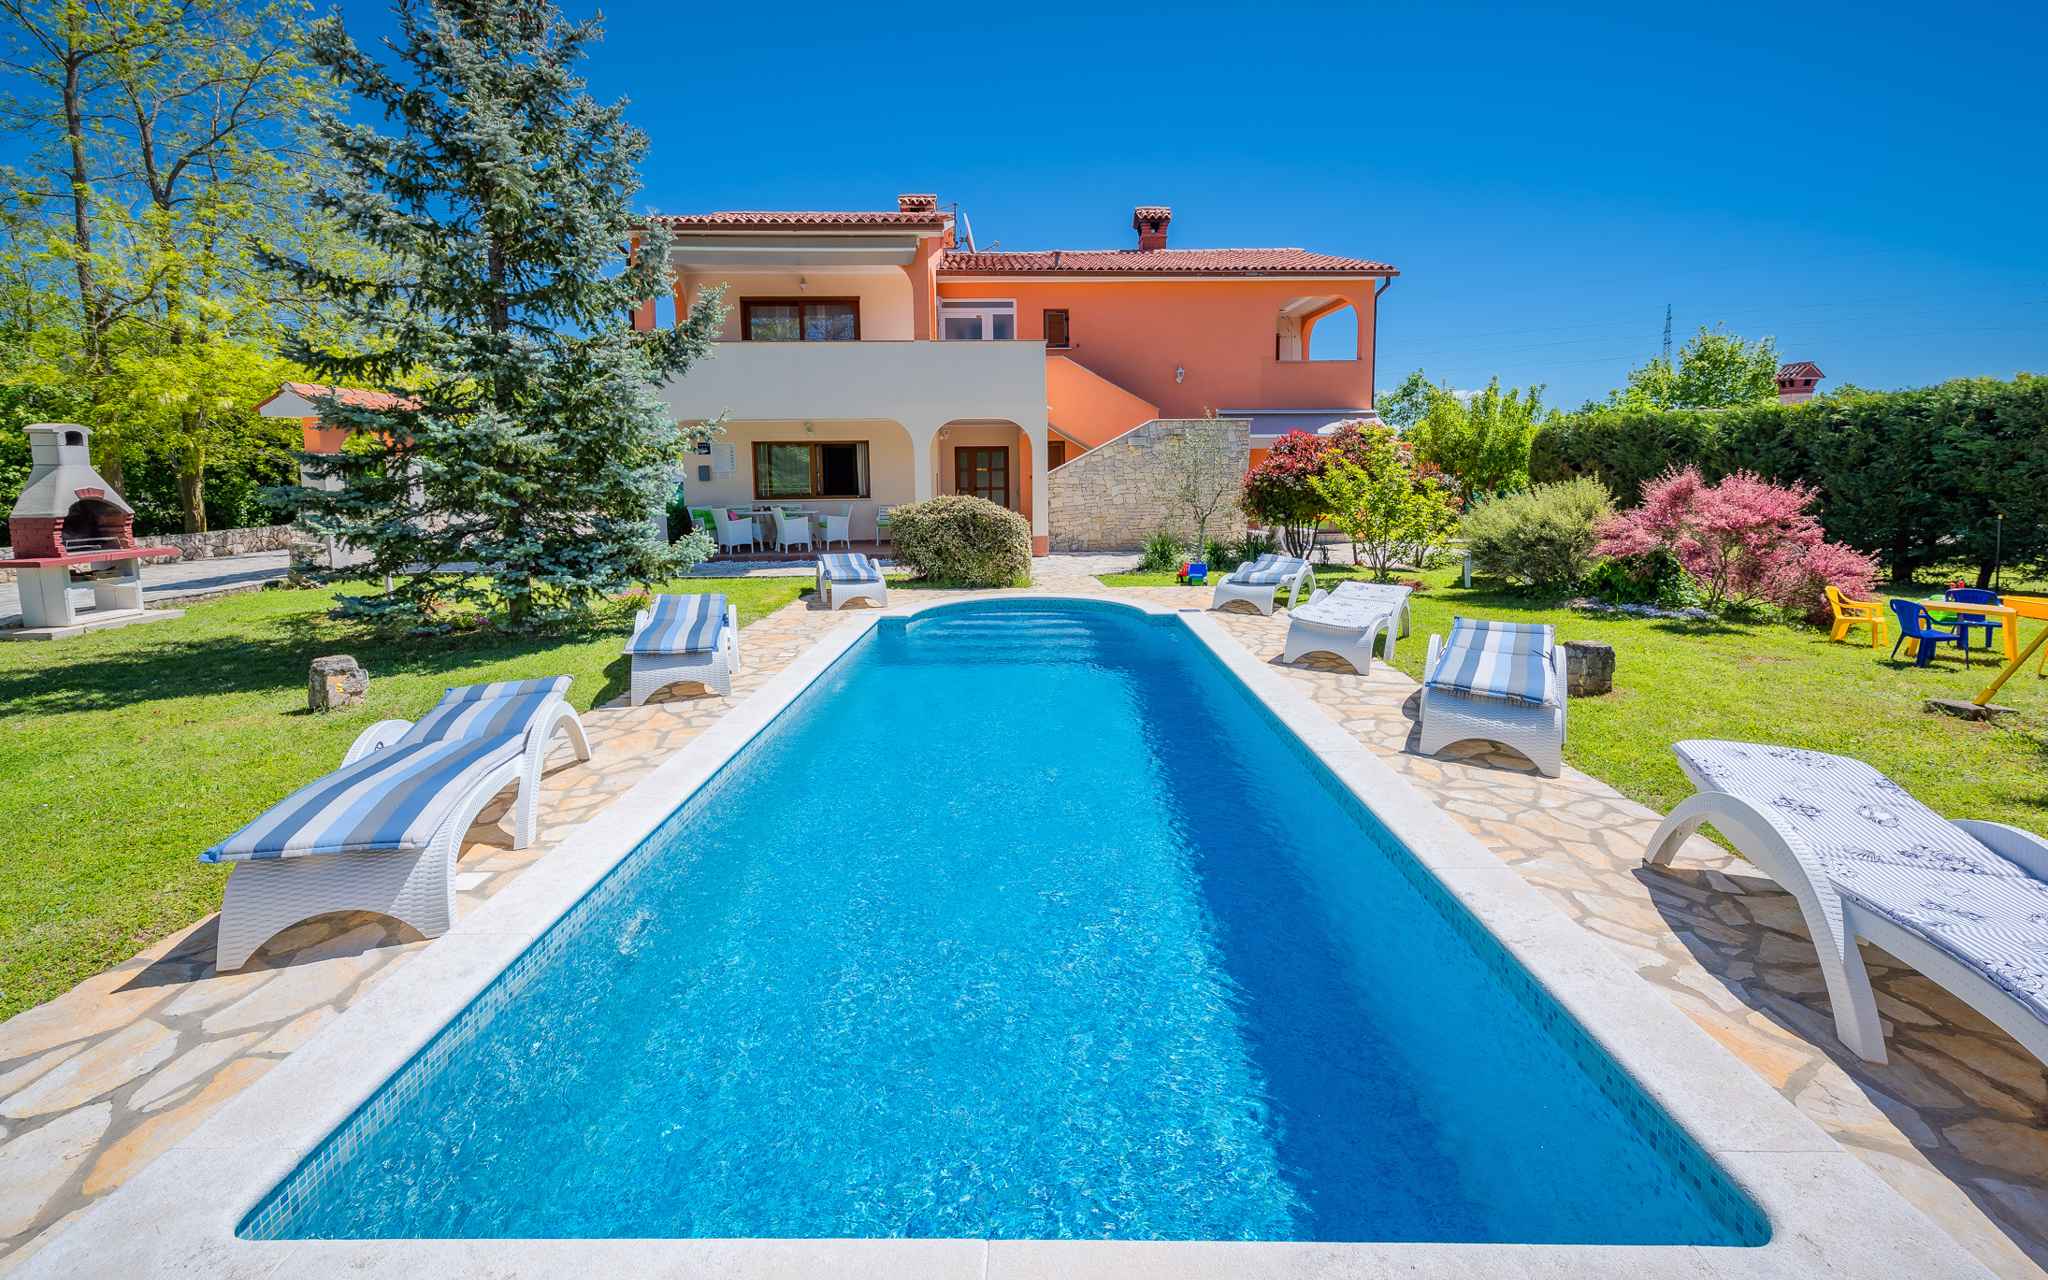 Villa mit Pool und Terrasse Ferienhaus in Europa